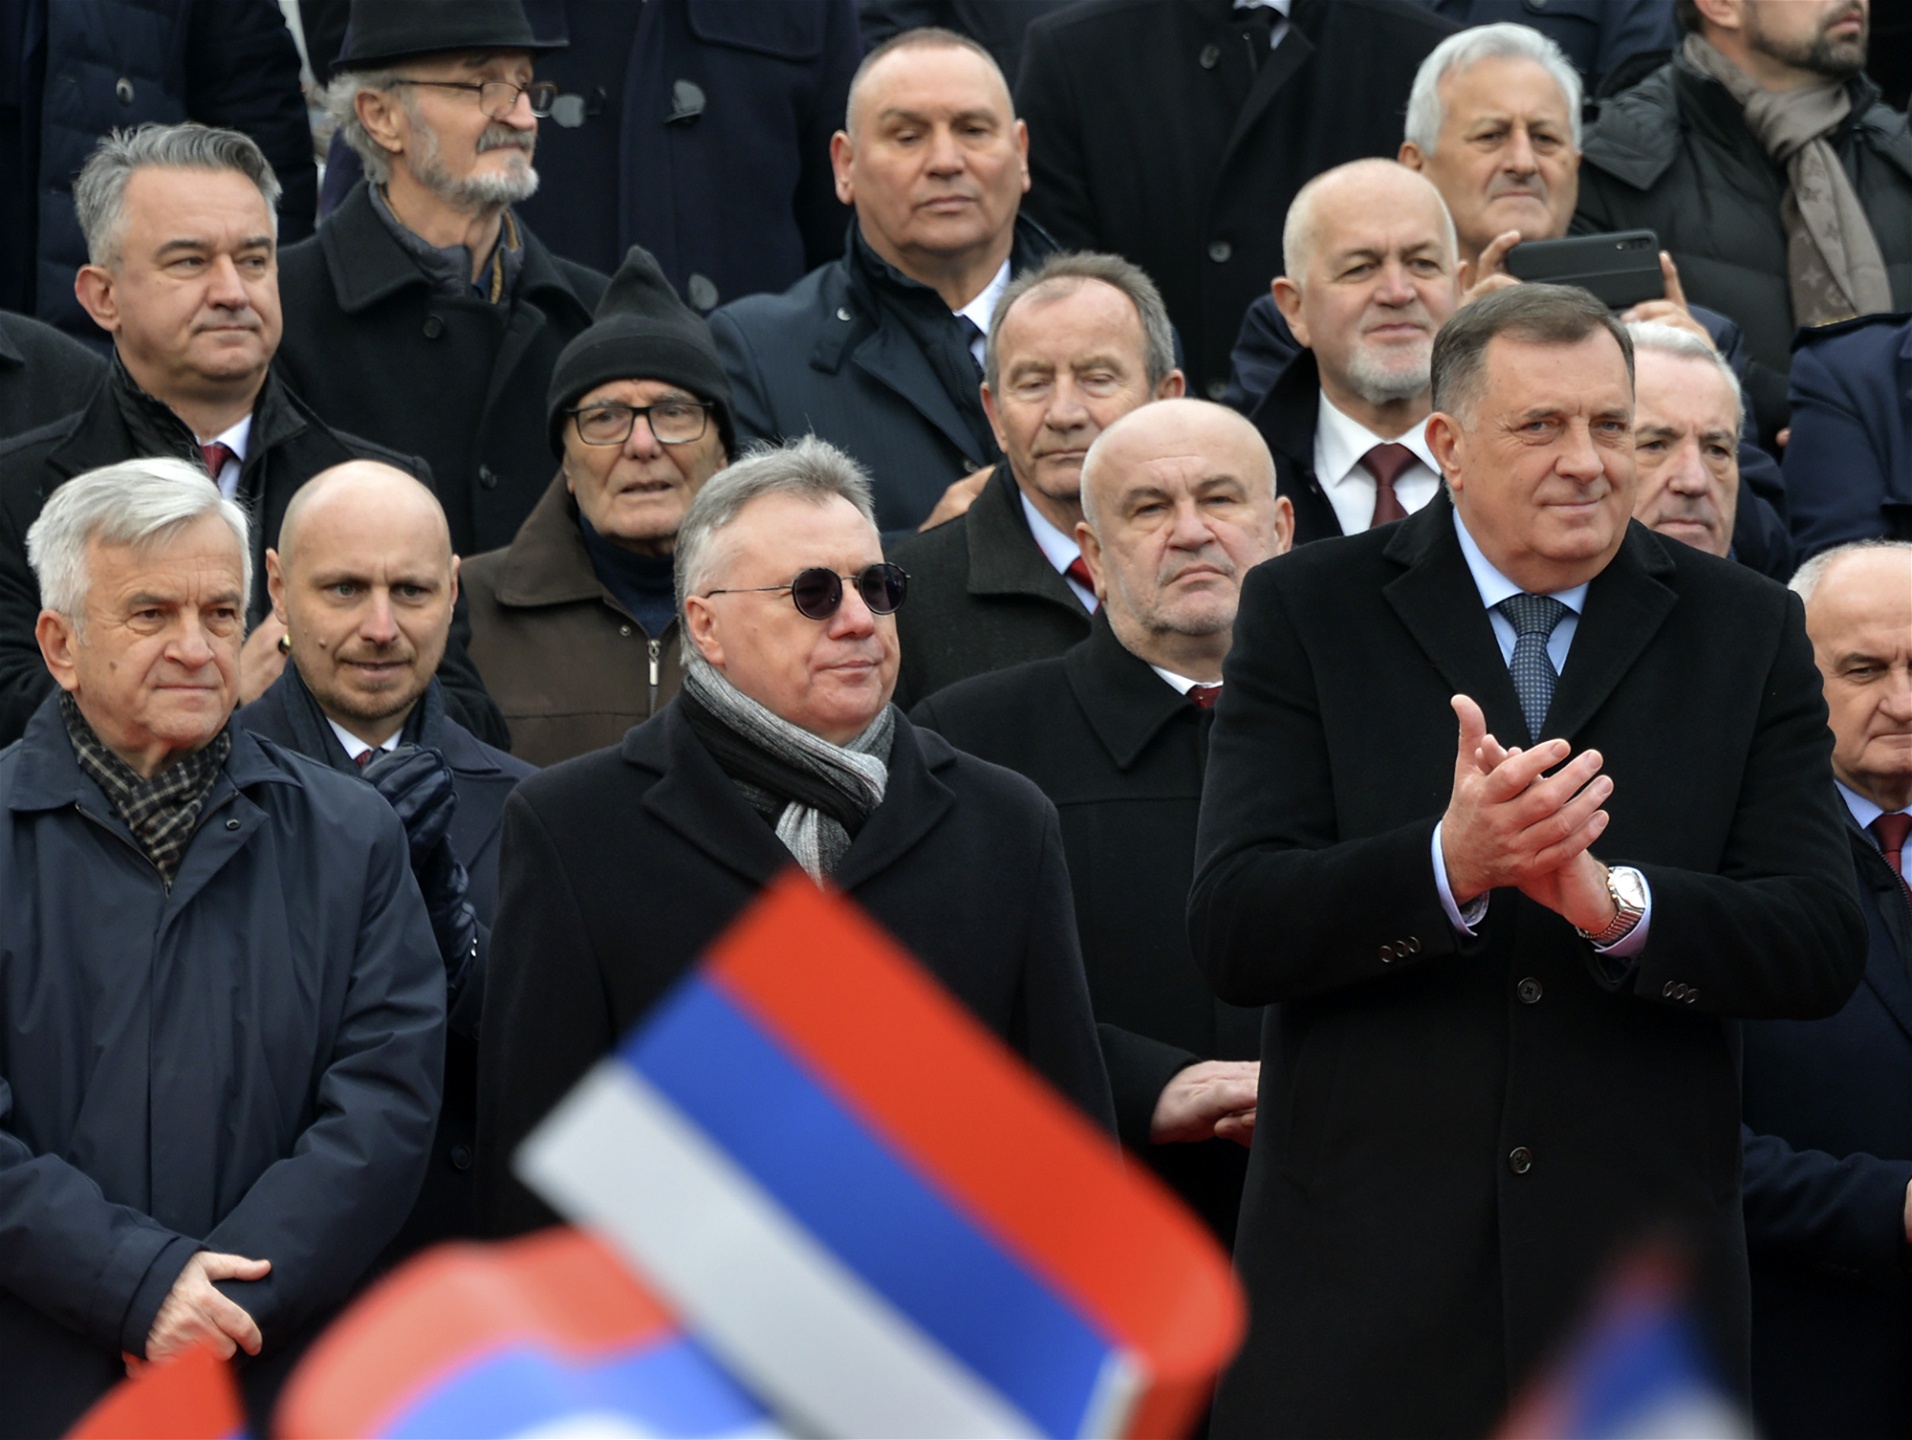 Milorad Dodik, till höger, applåder under en parad som markerar den 30 årsdagen av Republic Srpska I Banja Luka, norra Bosnienn, söndagen den 9 januari 2022. Foto: Radivoje Pavicic/TT